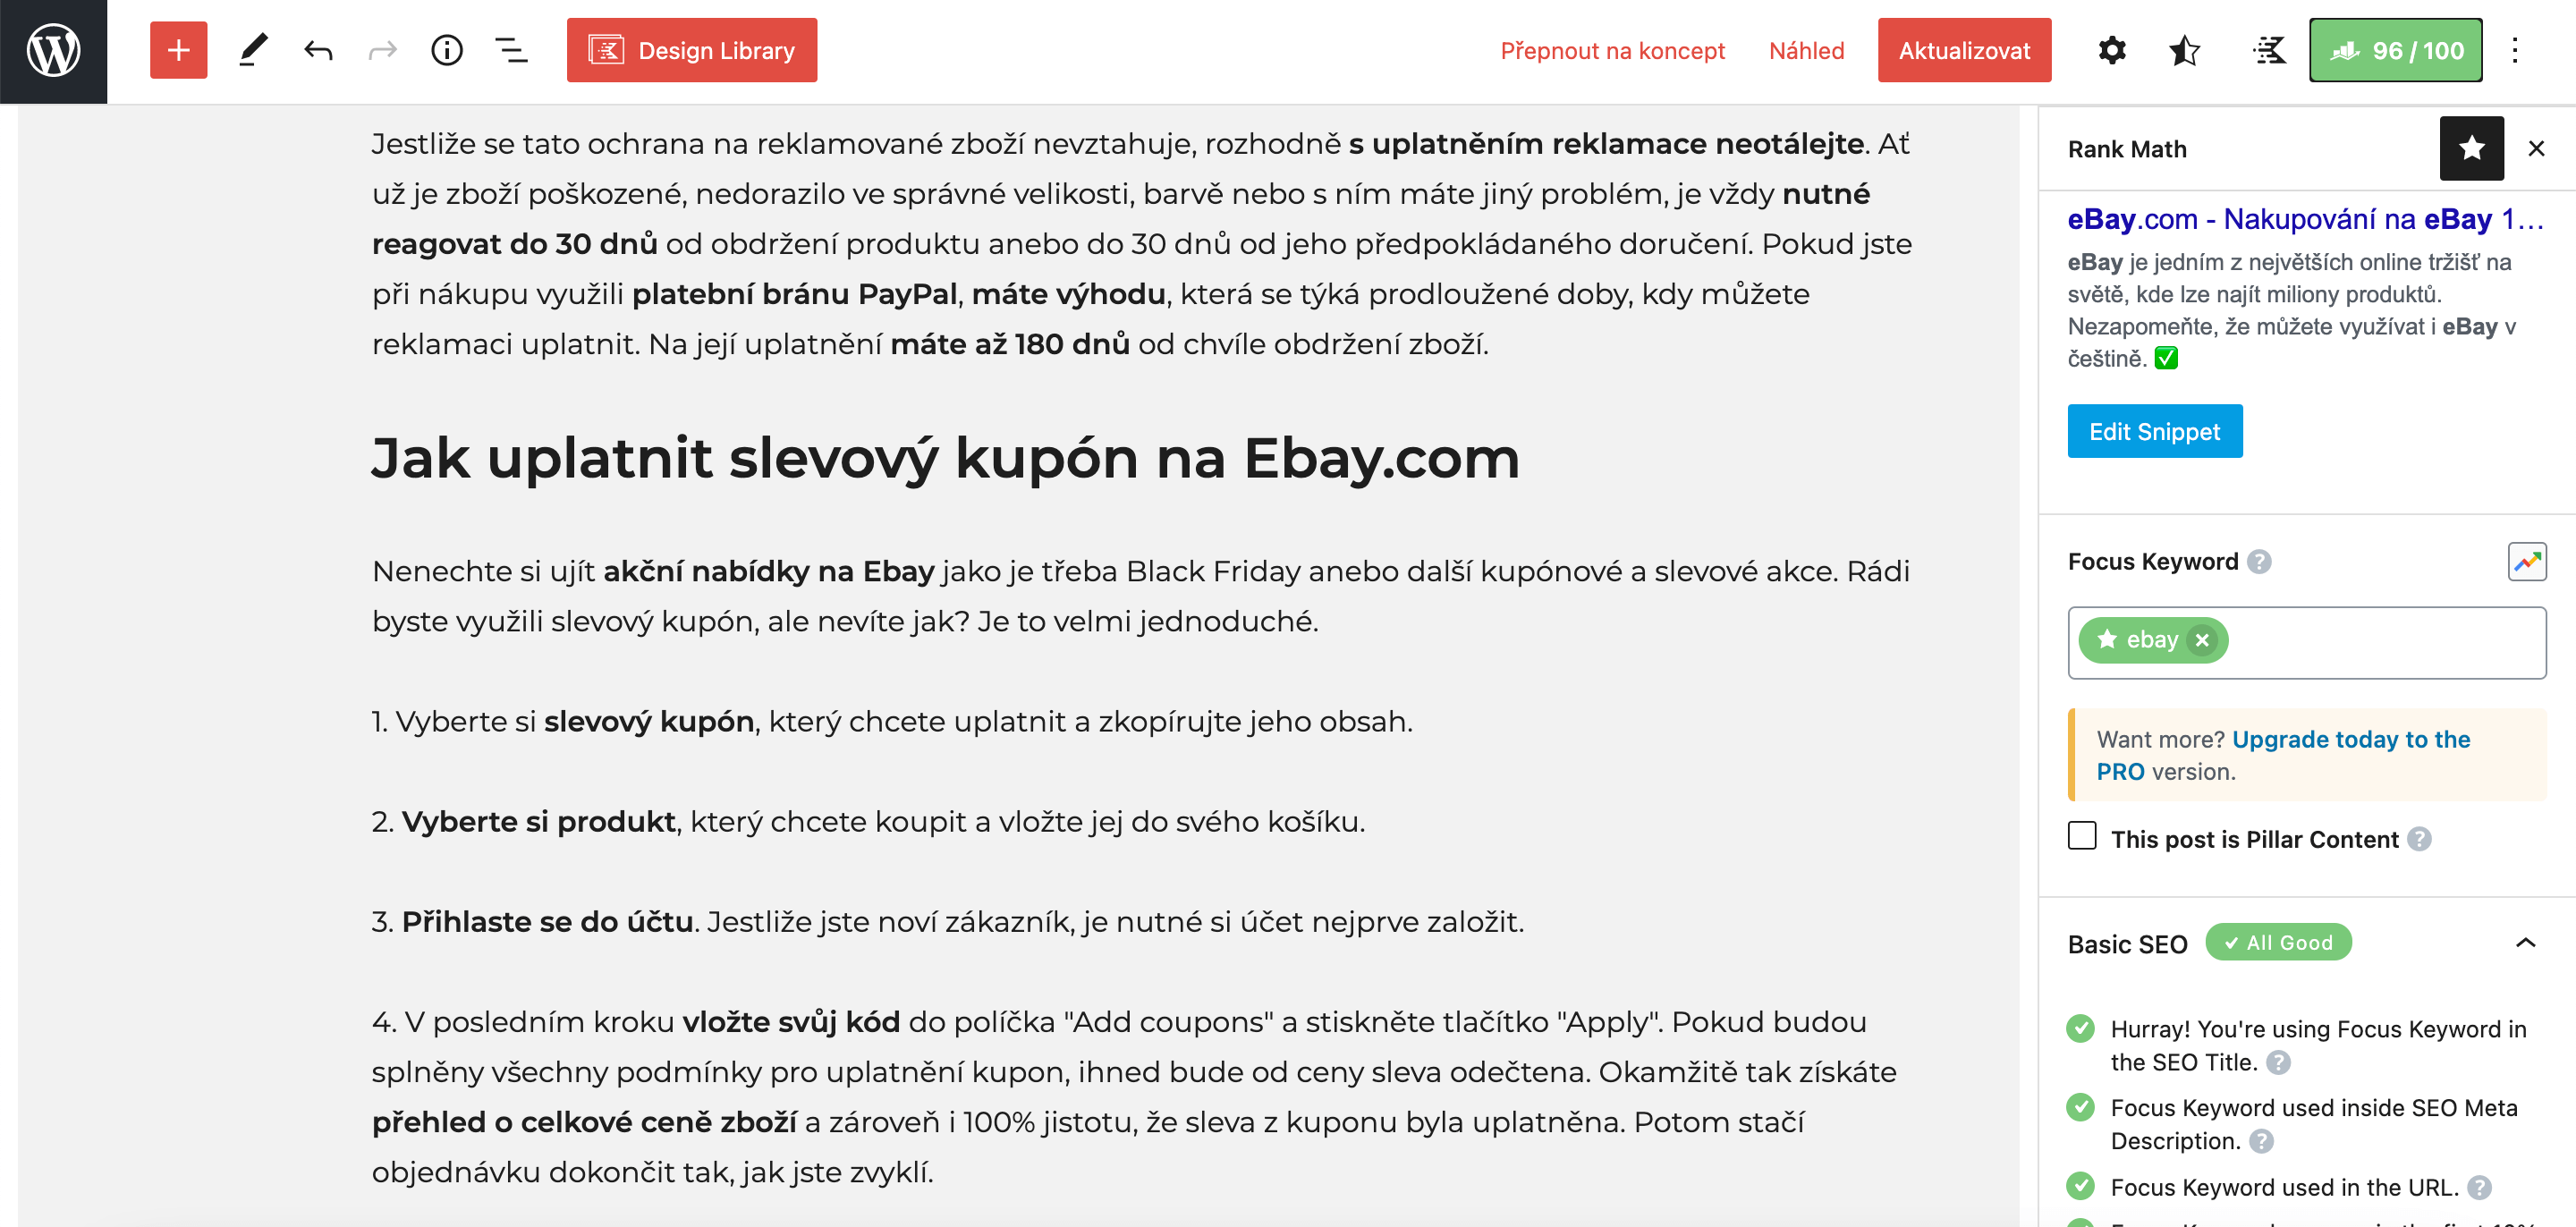 Článek o eBay - Neaktuální obsah